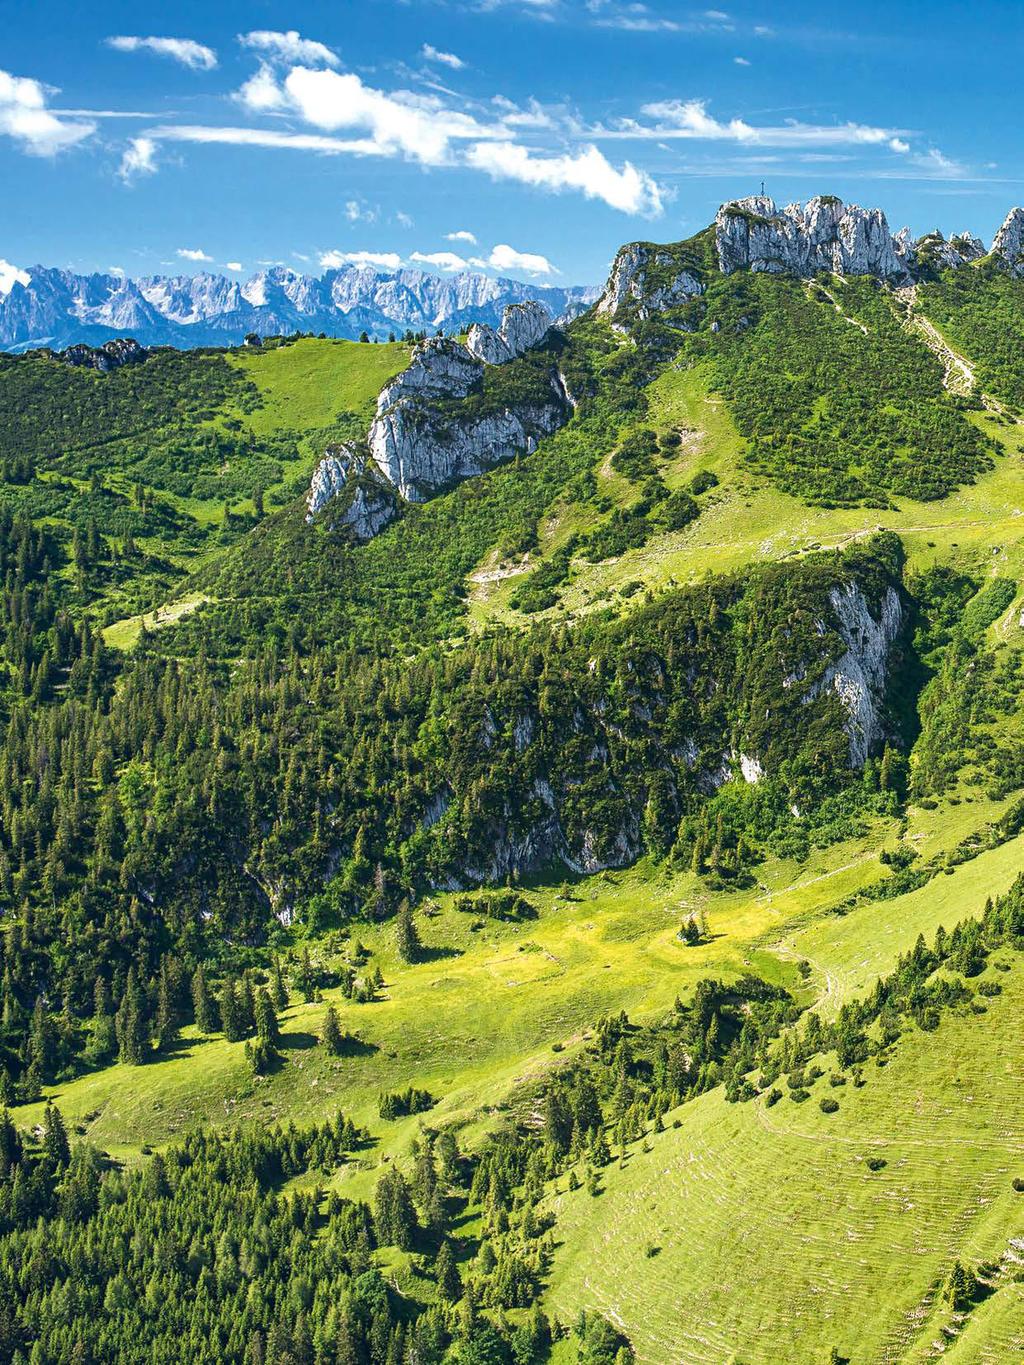 REISE FÜNF ROUTEN MIT PANORAMA-BLICK Touren-Tipps Egal ob Allgäu, Chiemgau oder Ammergauer Alpen Bayerns Berge haben in unterschiedlichsten Schwierigkeitsgraden wunderschöne Panorama-Touren zu bieten.